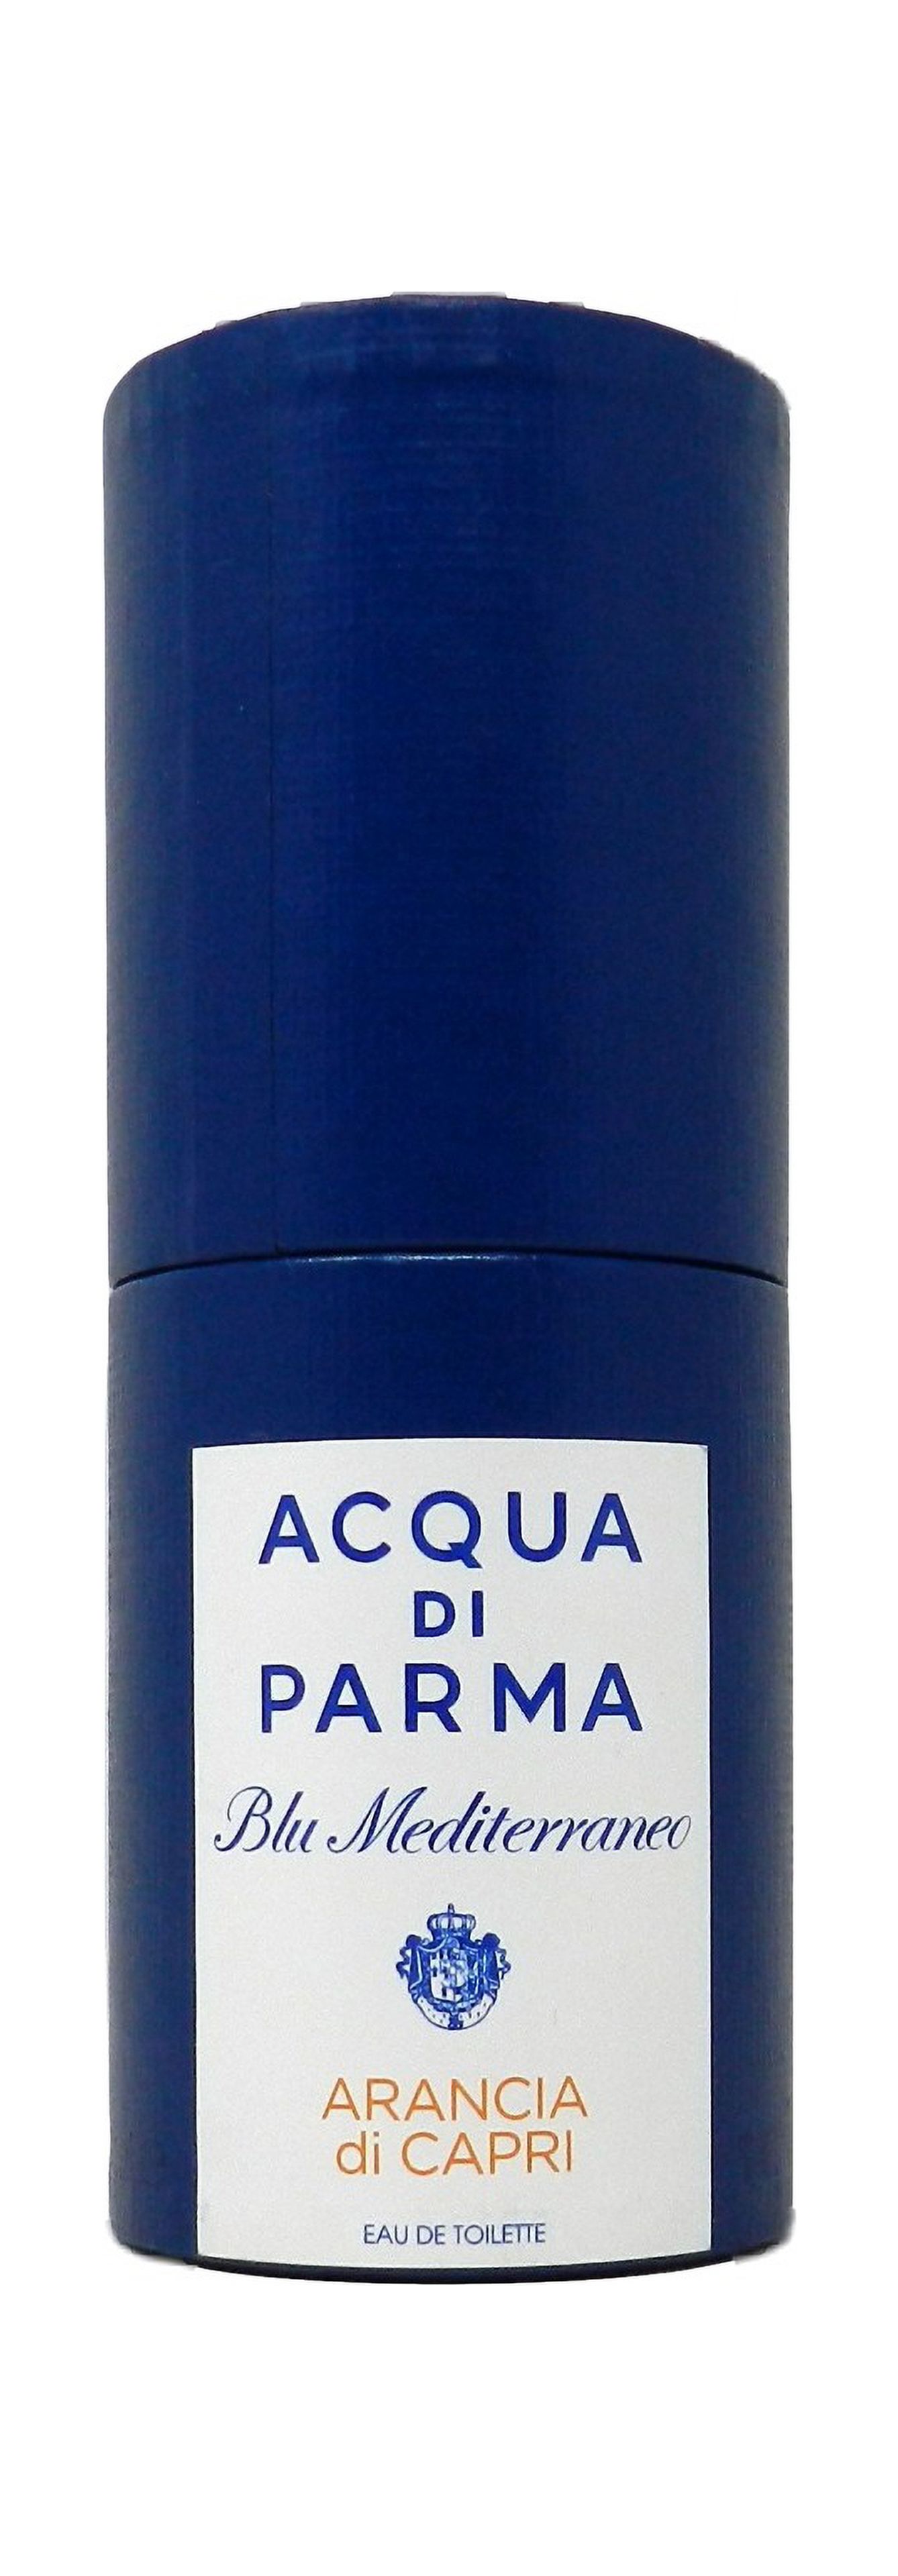 Acqua Di Parma Blu Mediterraneo Arancia Di Capri Eau De Toilette Spray 30ml/1oz - image 2 of 2